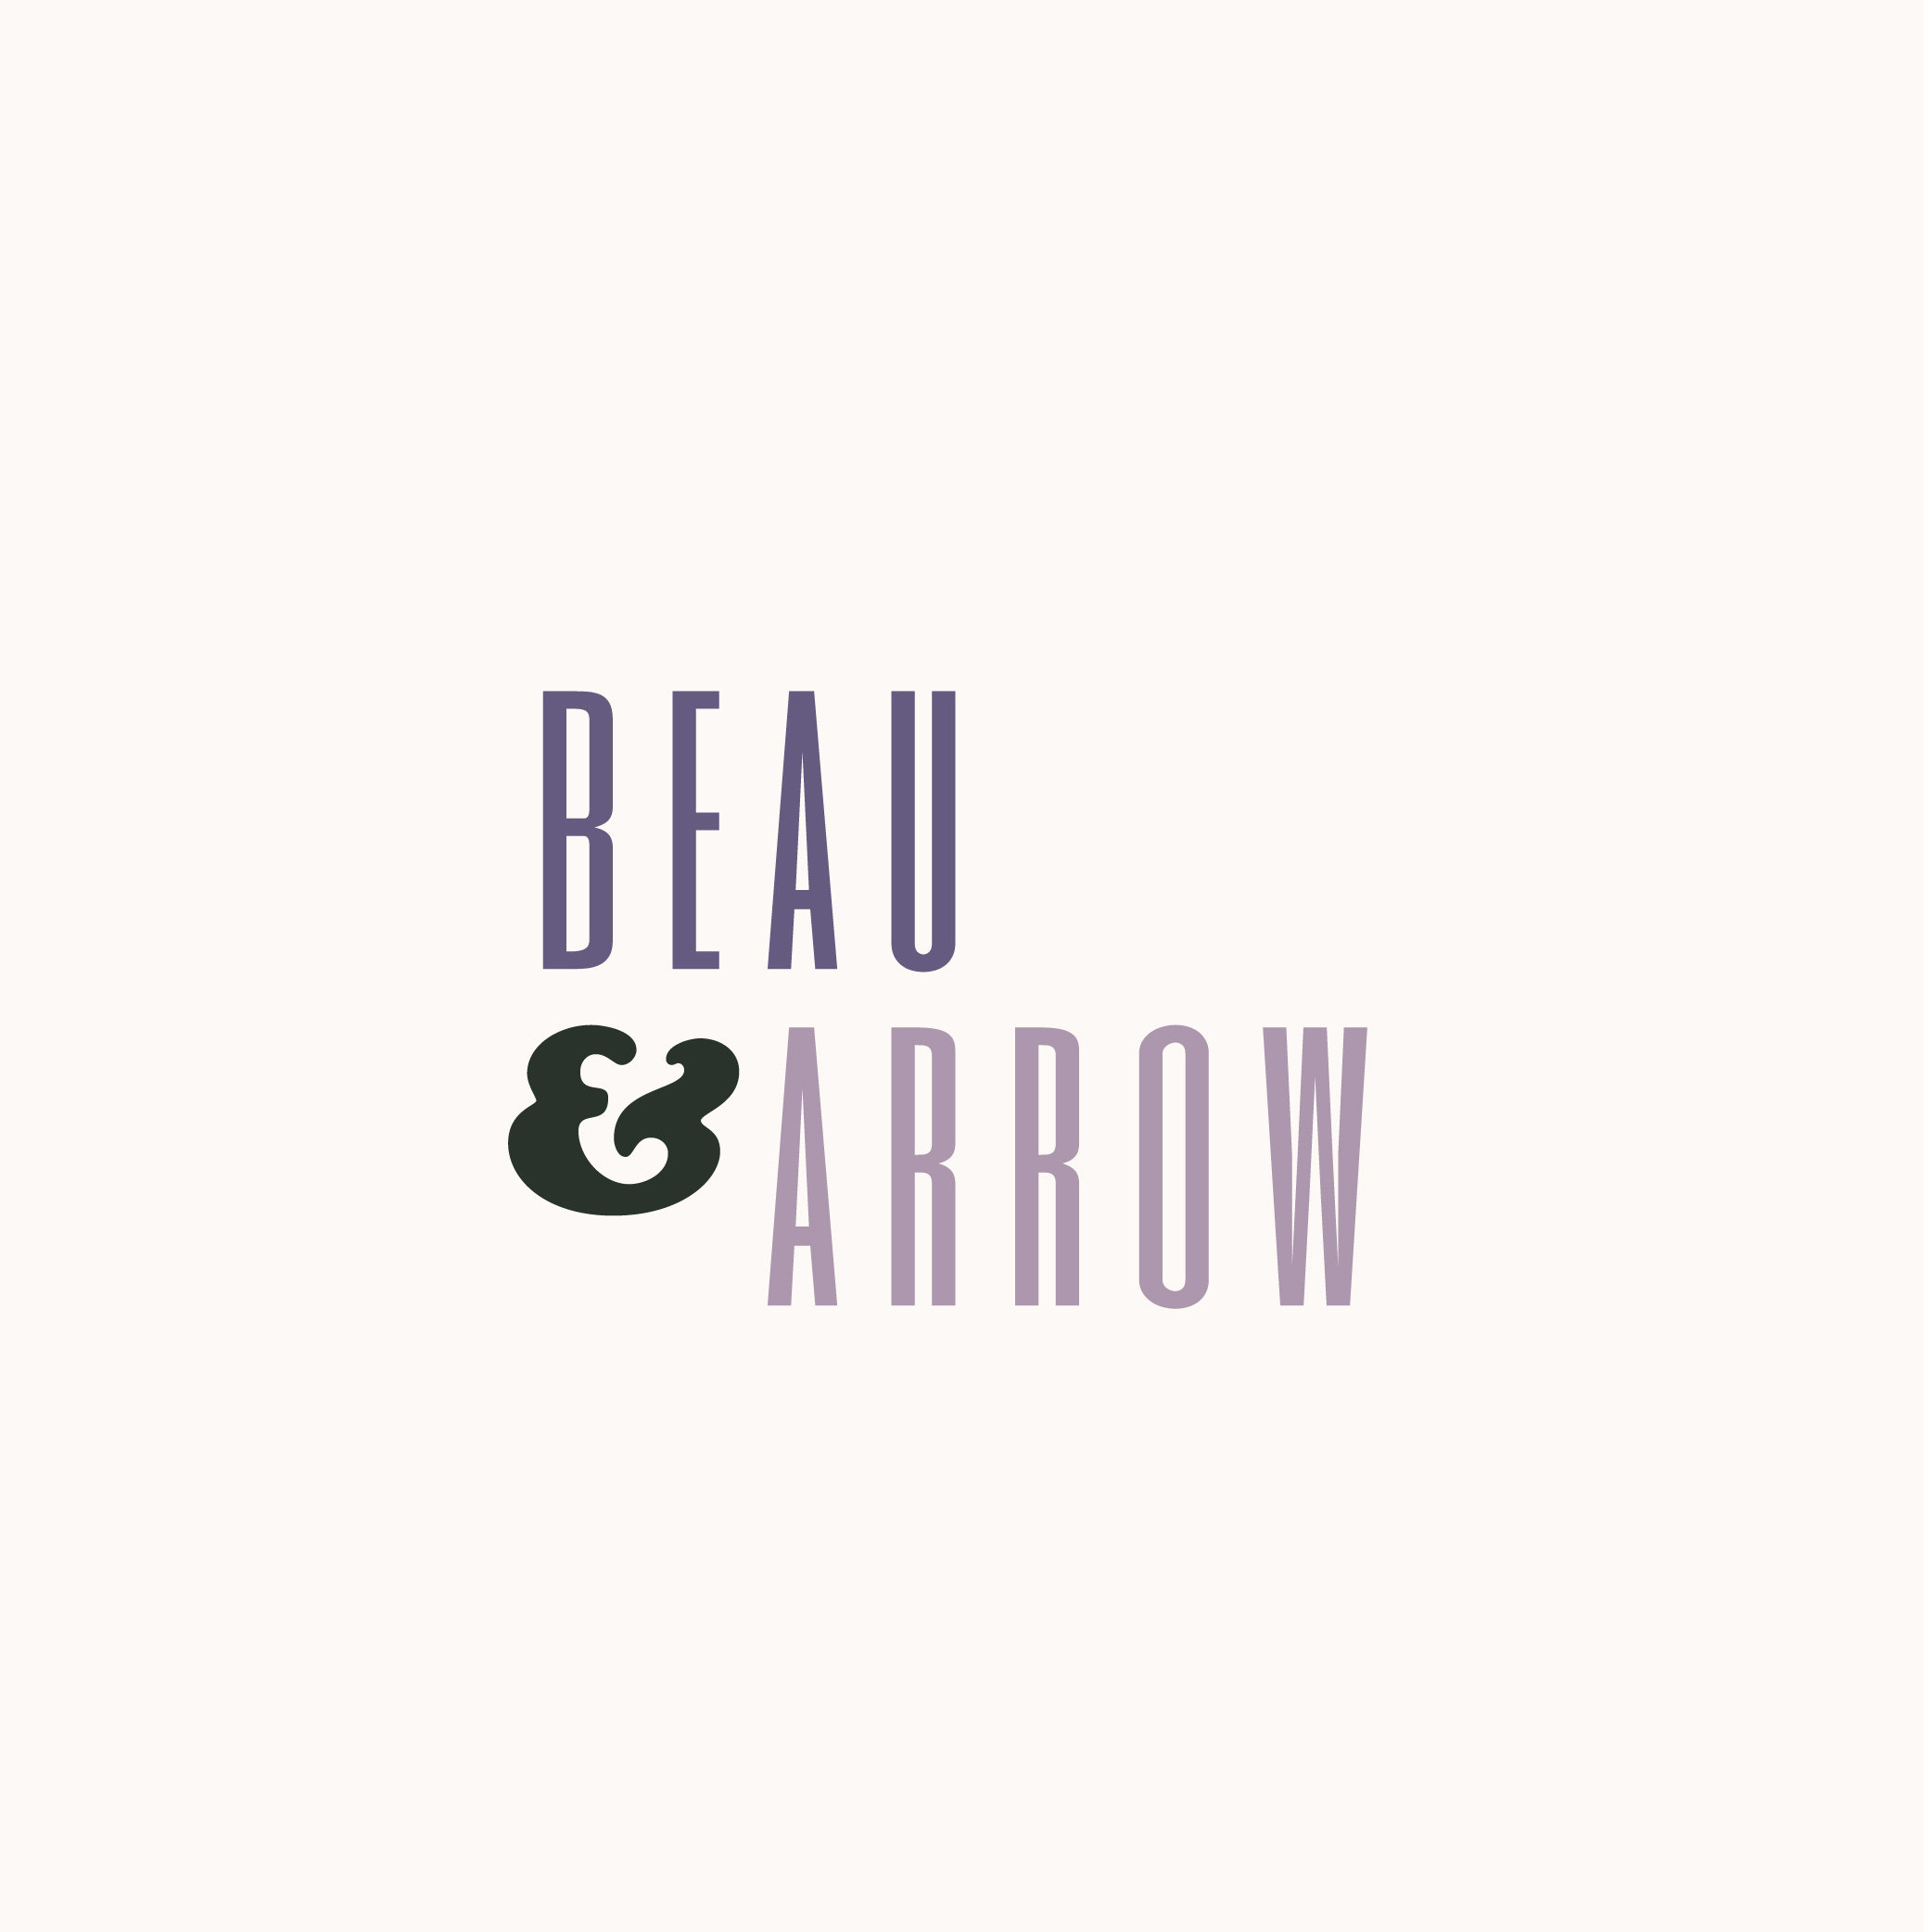 Beau & Arrow